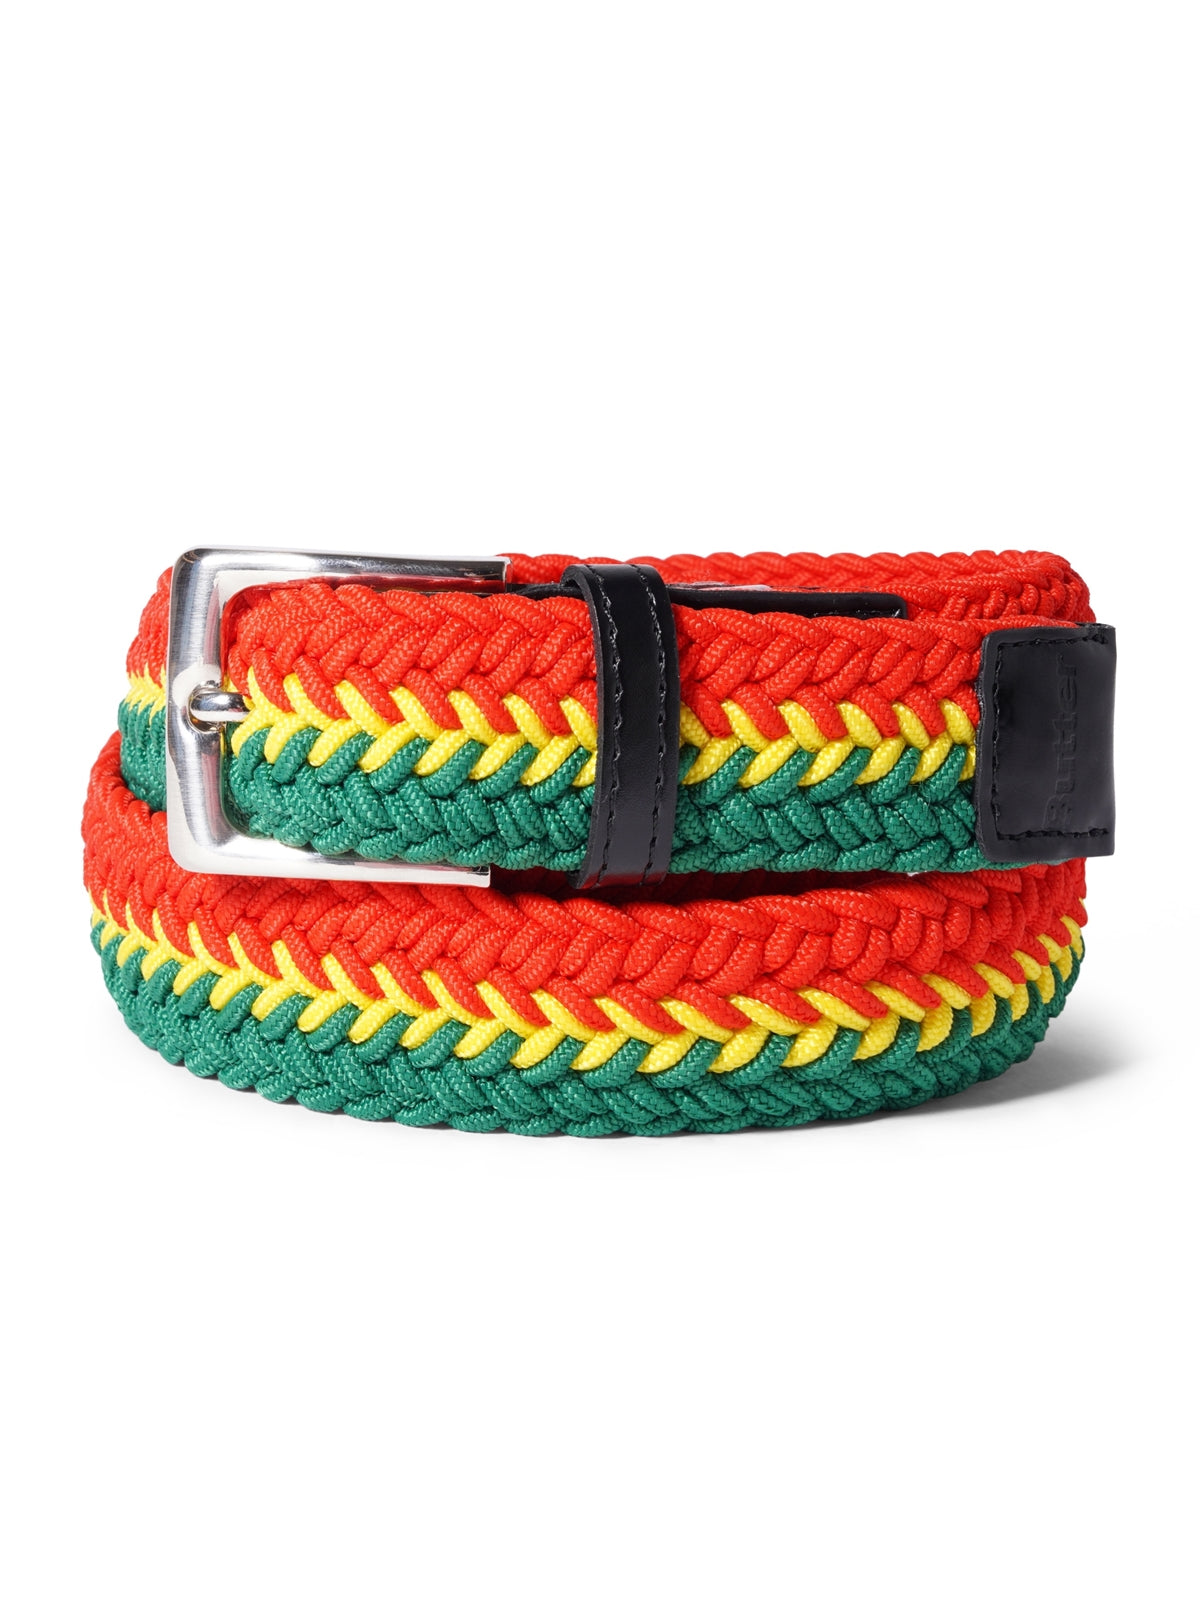 BUTTER GOODS Braided Belt - Green/Yellow/Red